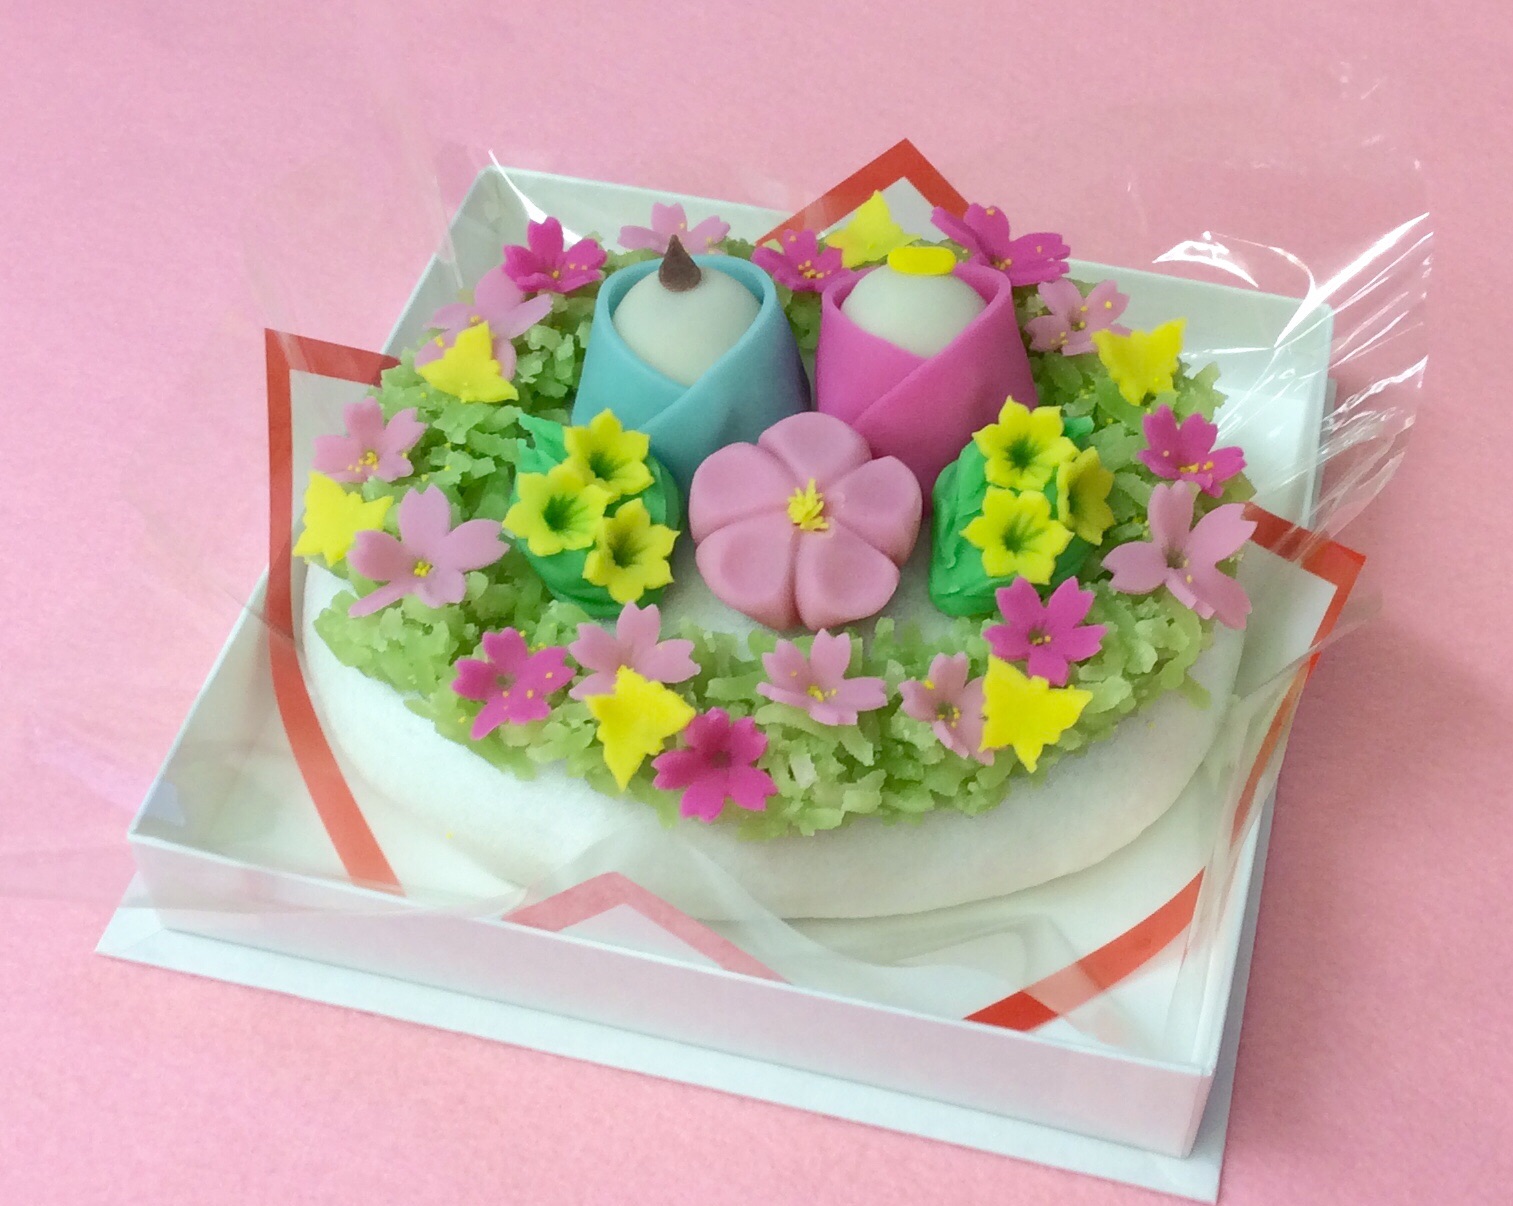 菓子処 喜久春 オリジナル和菓子ケーキ 上用饅頭でお作りします ひな祭り